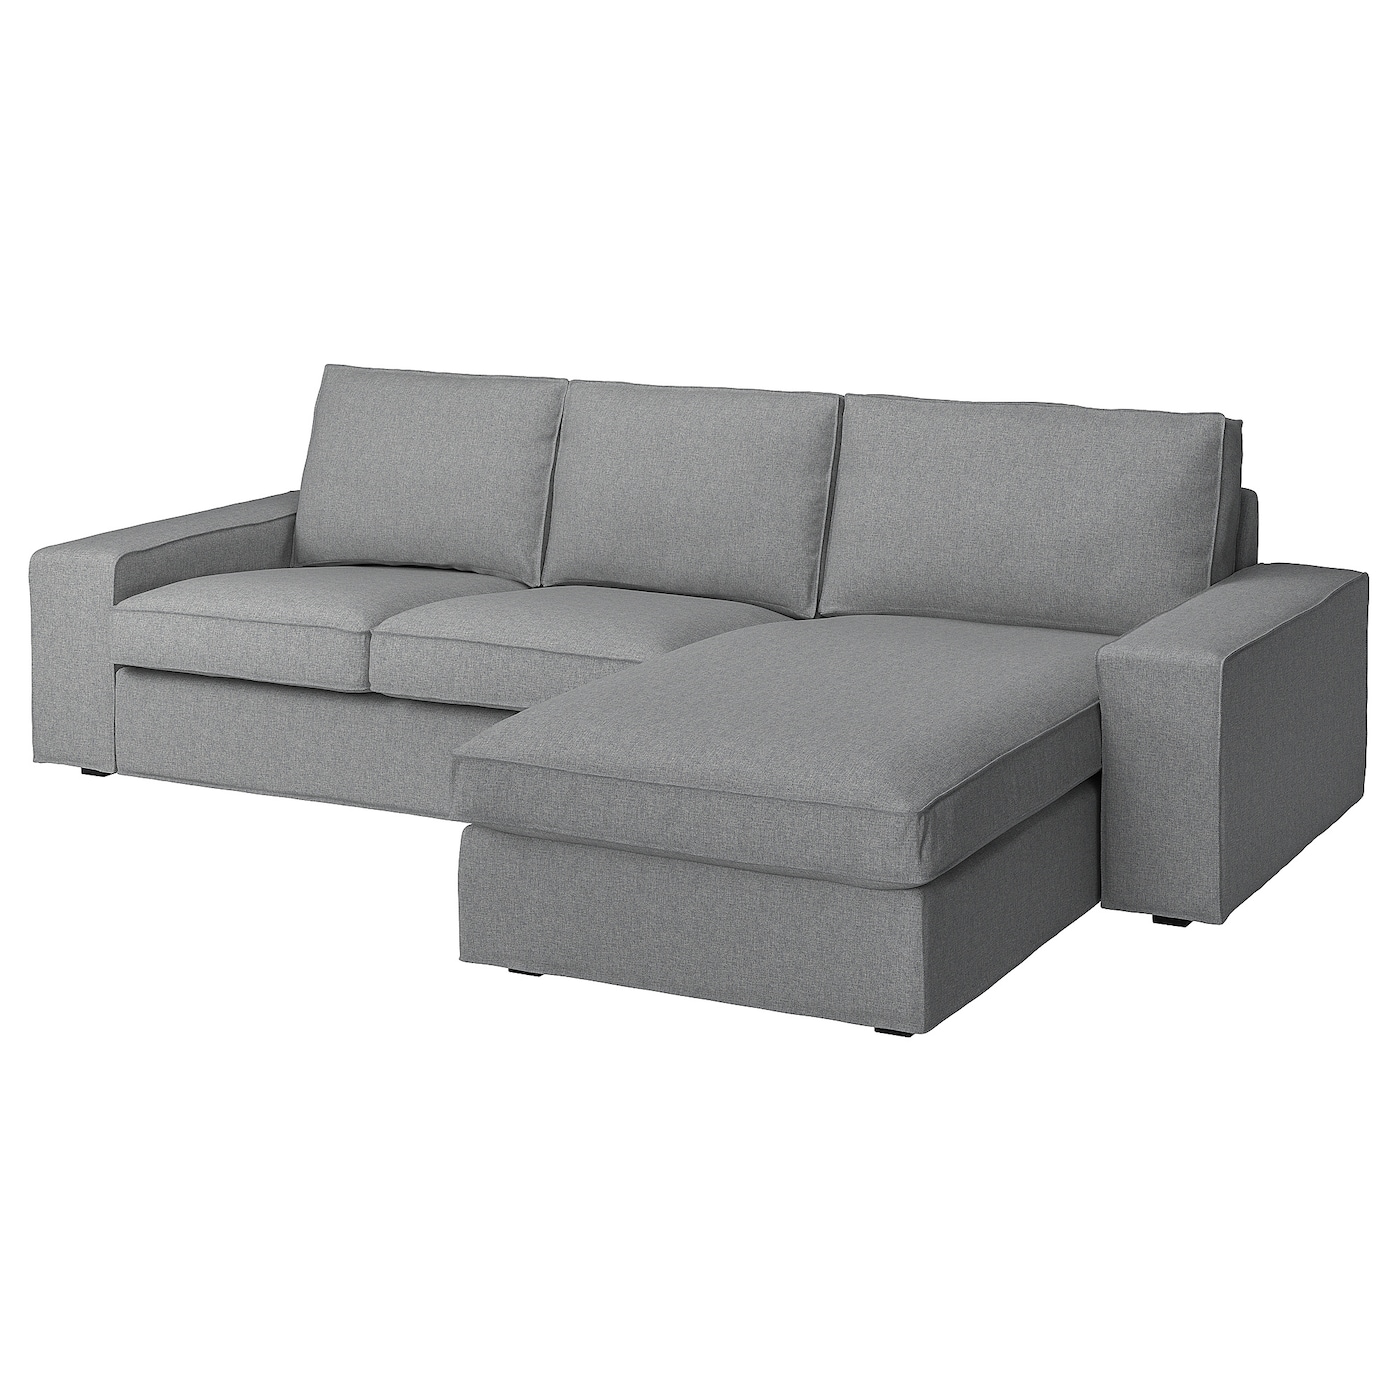 2-местный диван и кушетка - IKEA KIVIK, 83x95/163x280см, серый, КИВИК ИКЕА